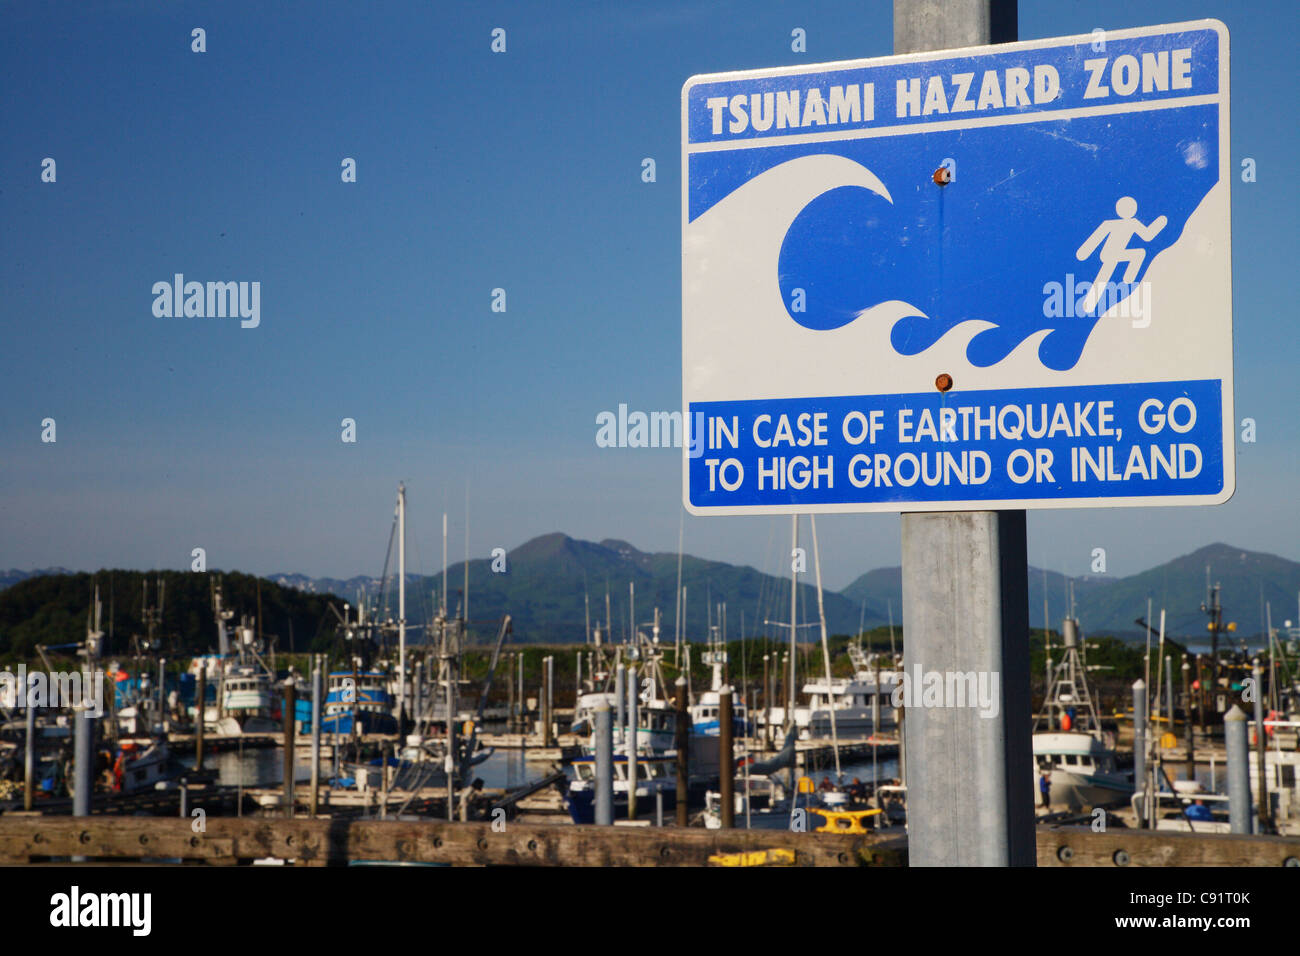 L'île Kodiak en Alaska Small Boat Harbour signe de détresse Tsunami catastrophe naturelle la sûreté sismique Banque D'Images